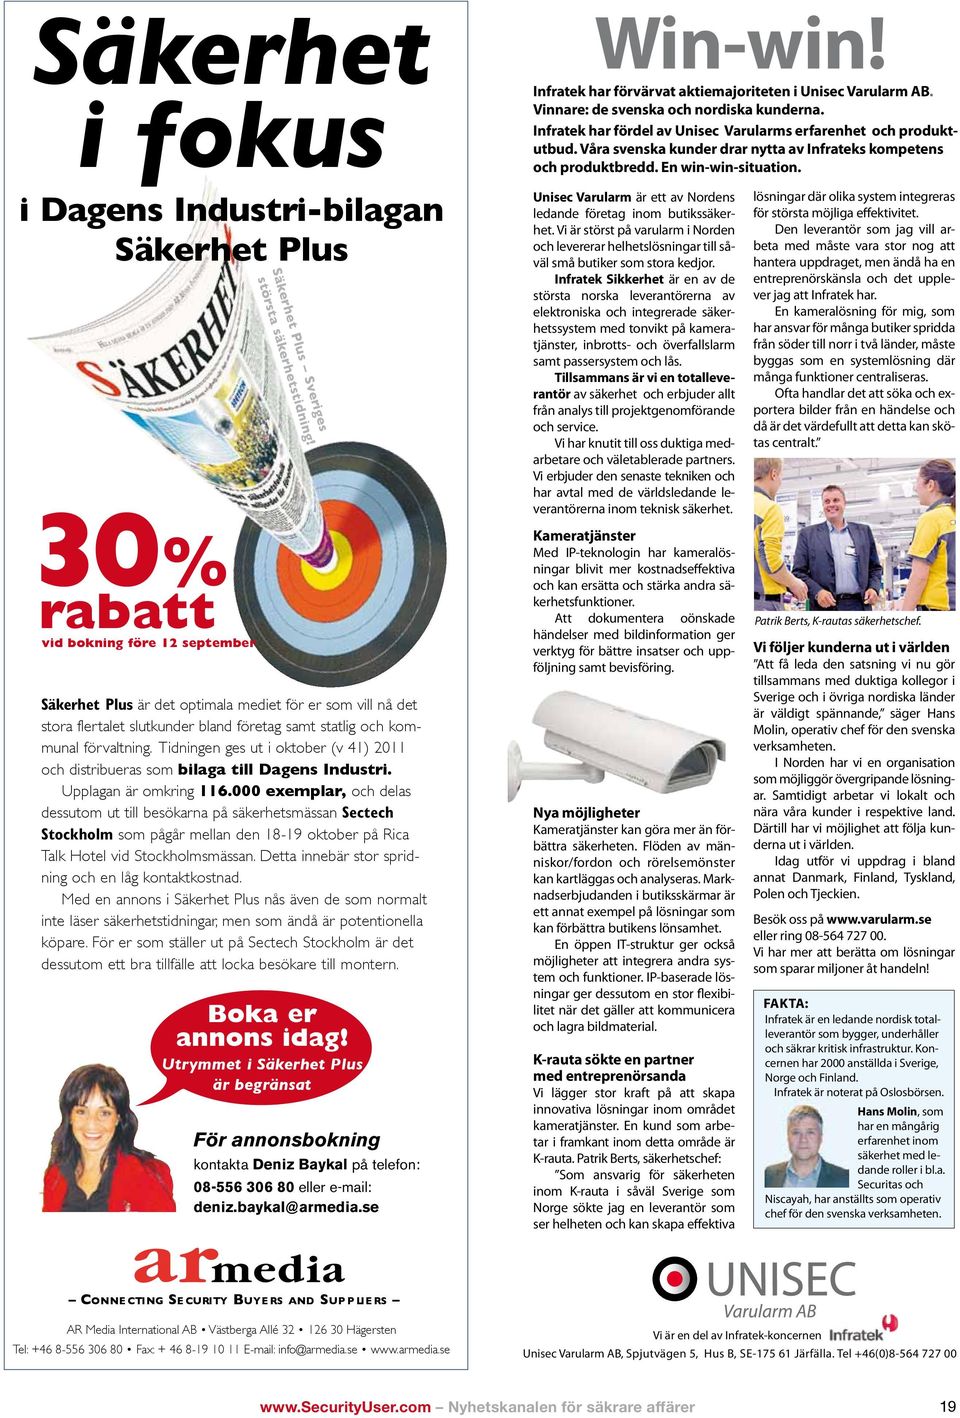 Tidningen ges ut i oktober (v 41) 2011 och distribueras som bilaga till Dagens Industri. Upplagan är omkring 116.